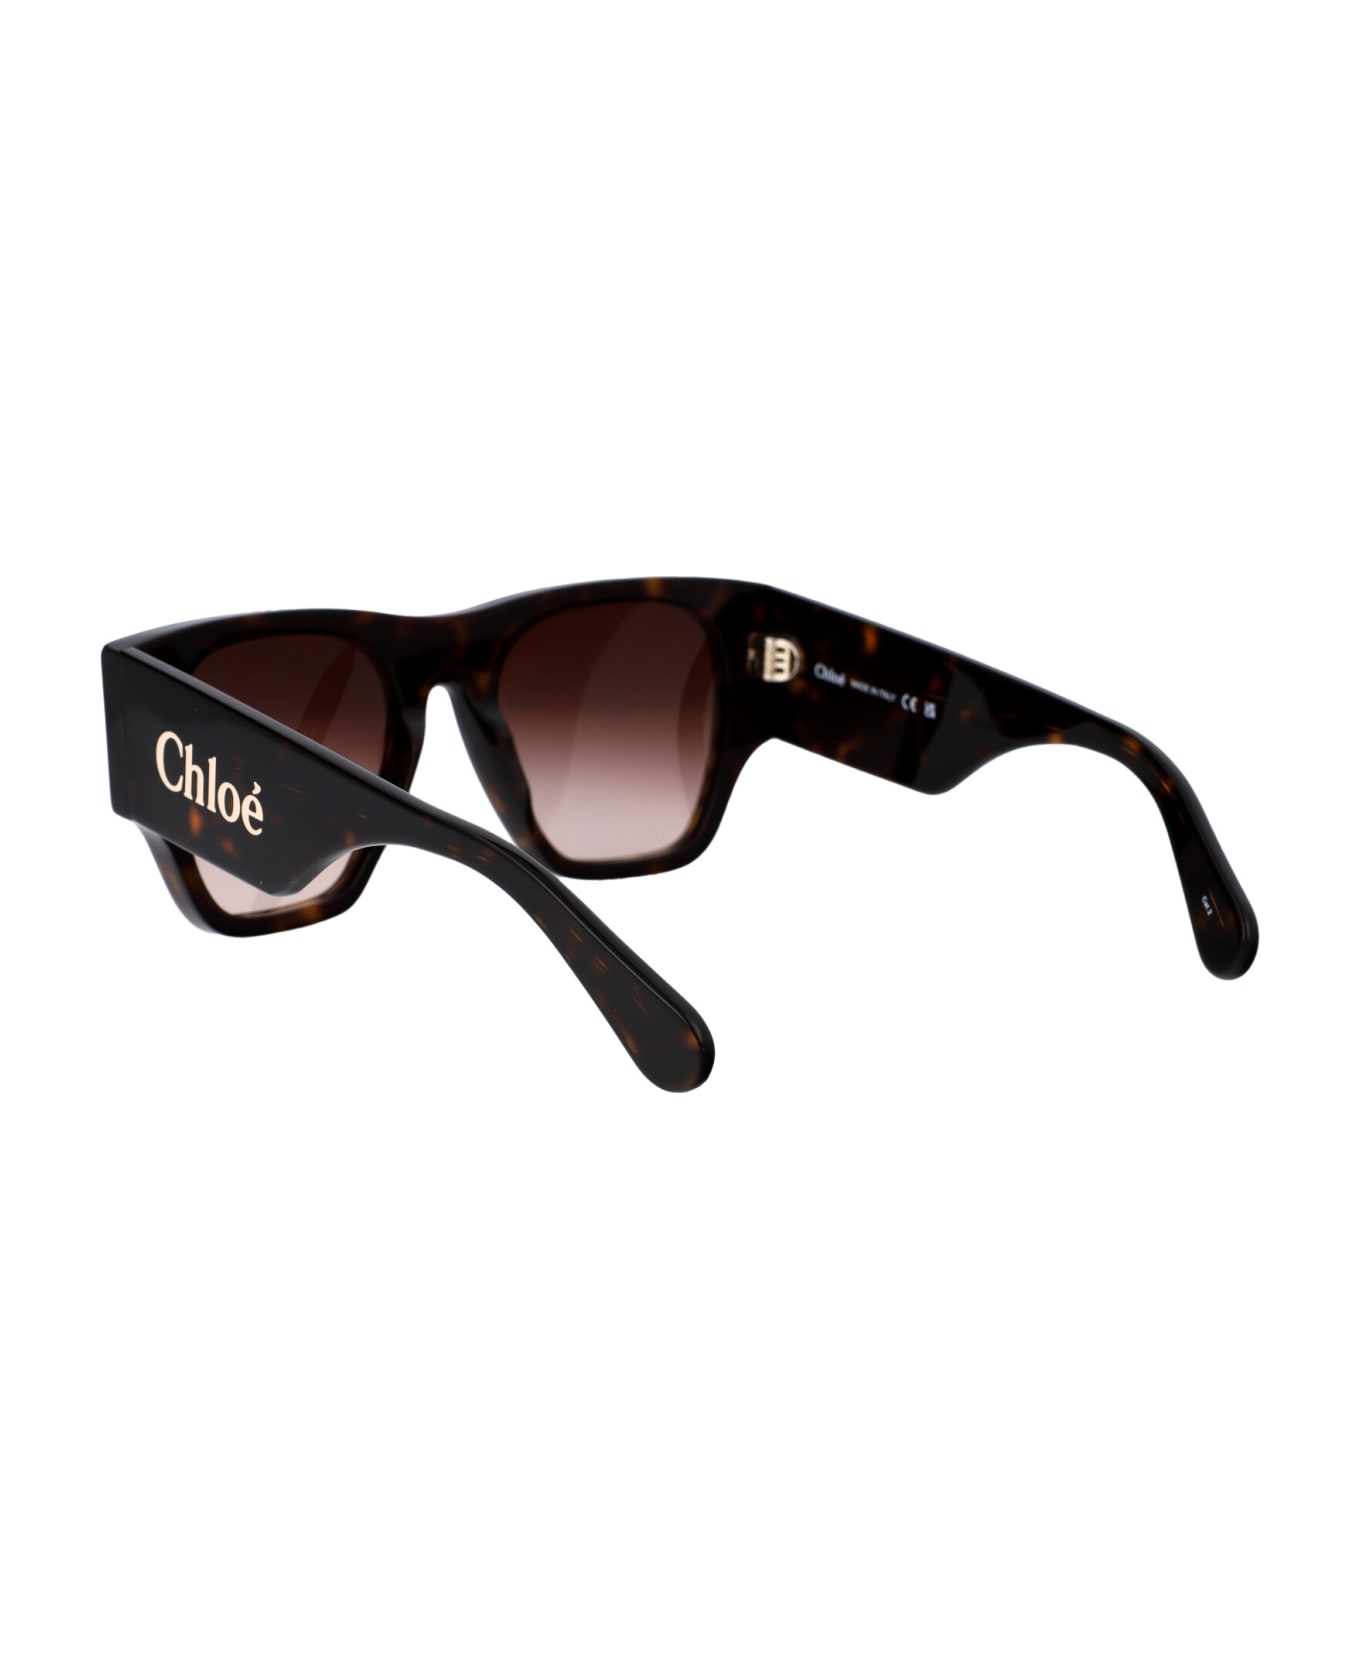 Chloé Eyewear Ch0233s Sunglasses - 002 HAVANA HAVANA BROWN